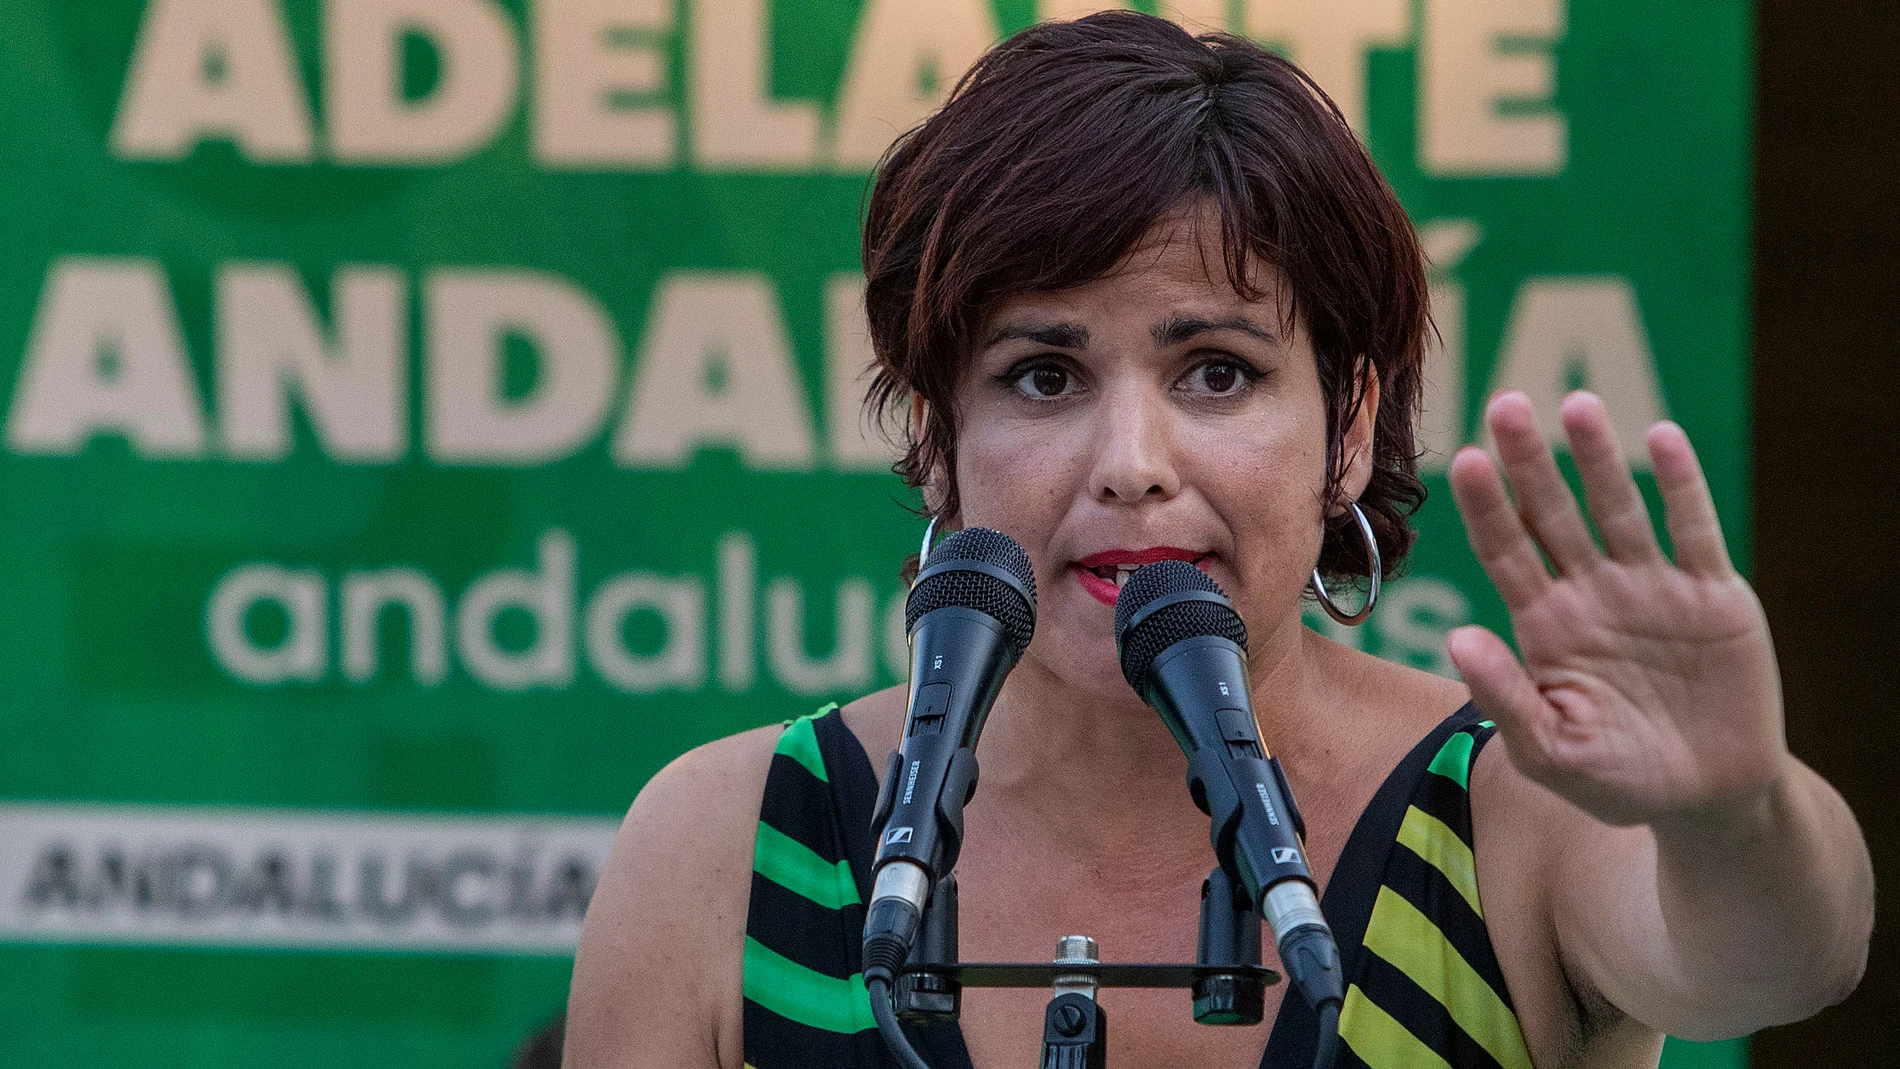 La candidata a la Junta de Andalucía por "Adelante Andalucía", Teresa Rodríguez